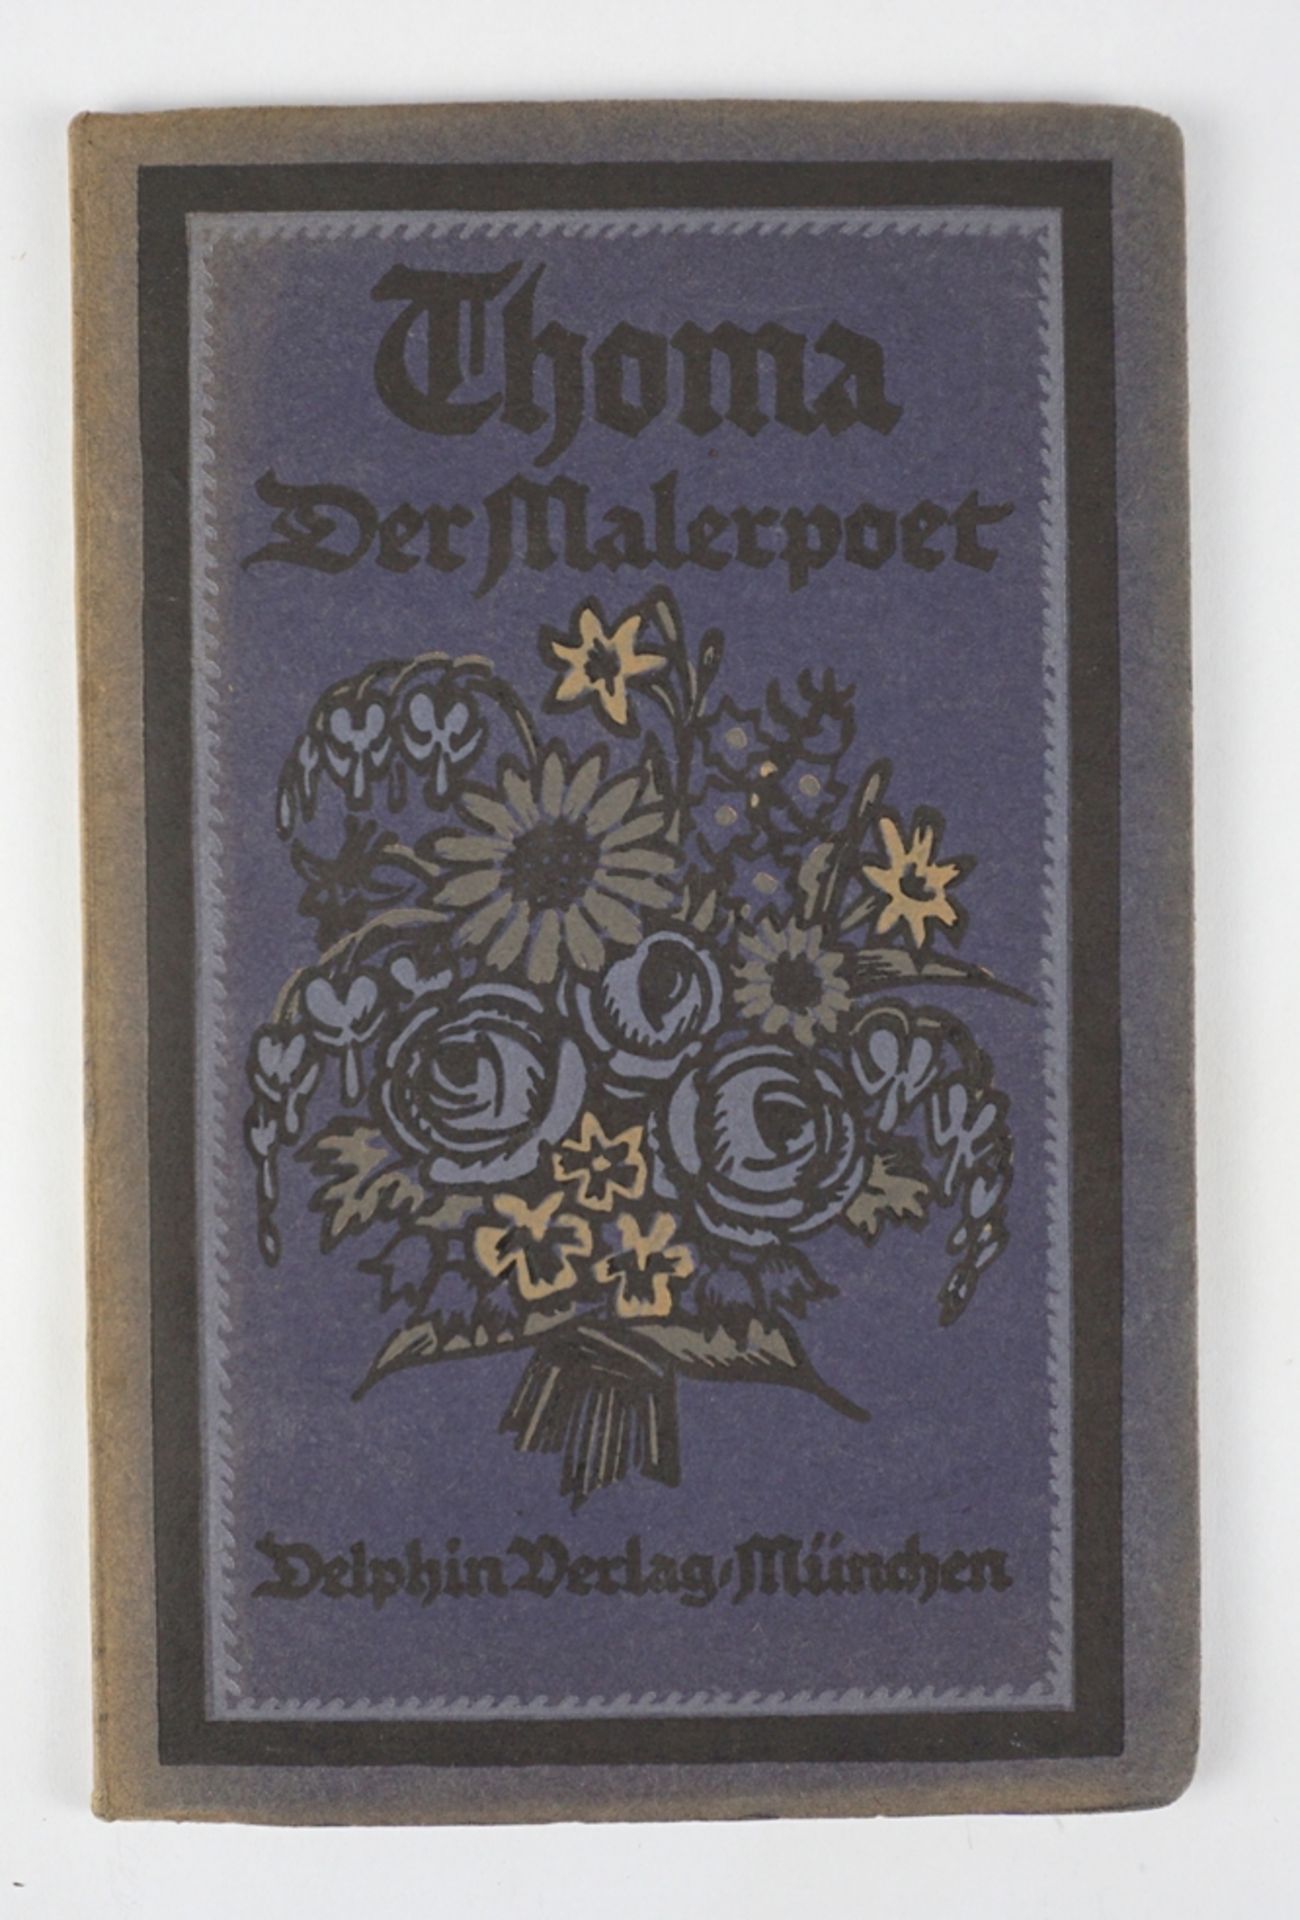 Thoma - Der Malerpoet, Delphin-Verlag, München 1922